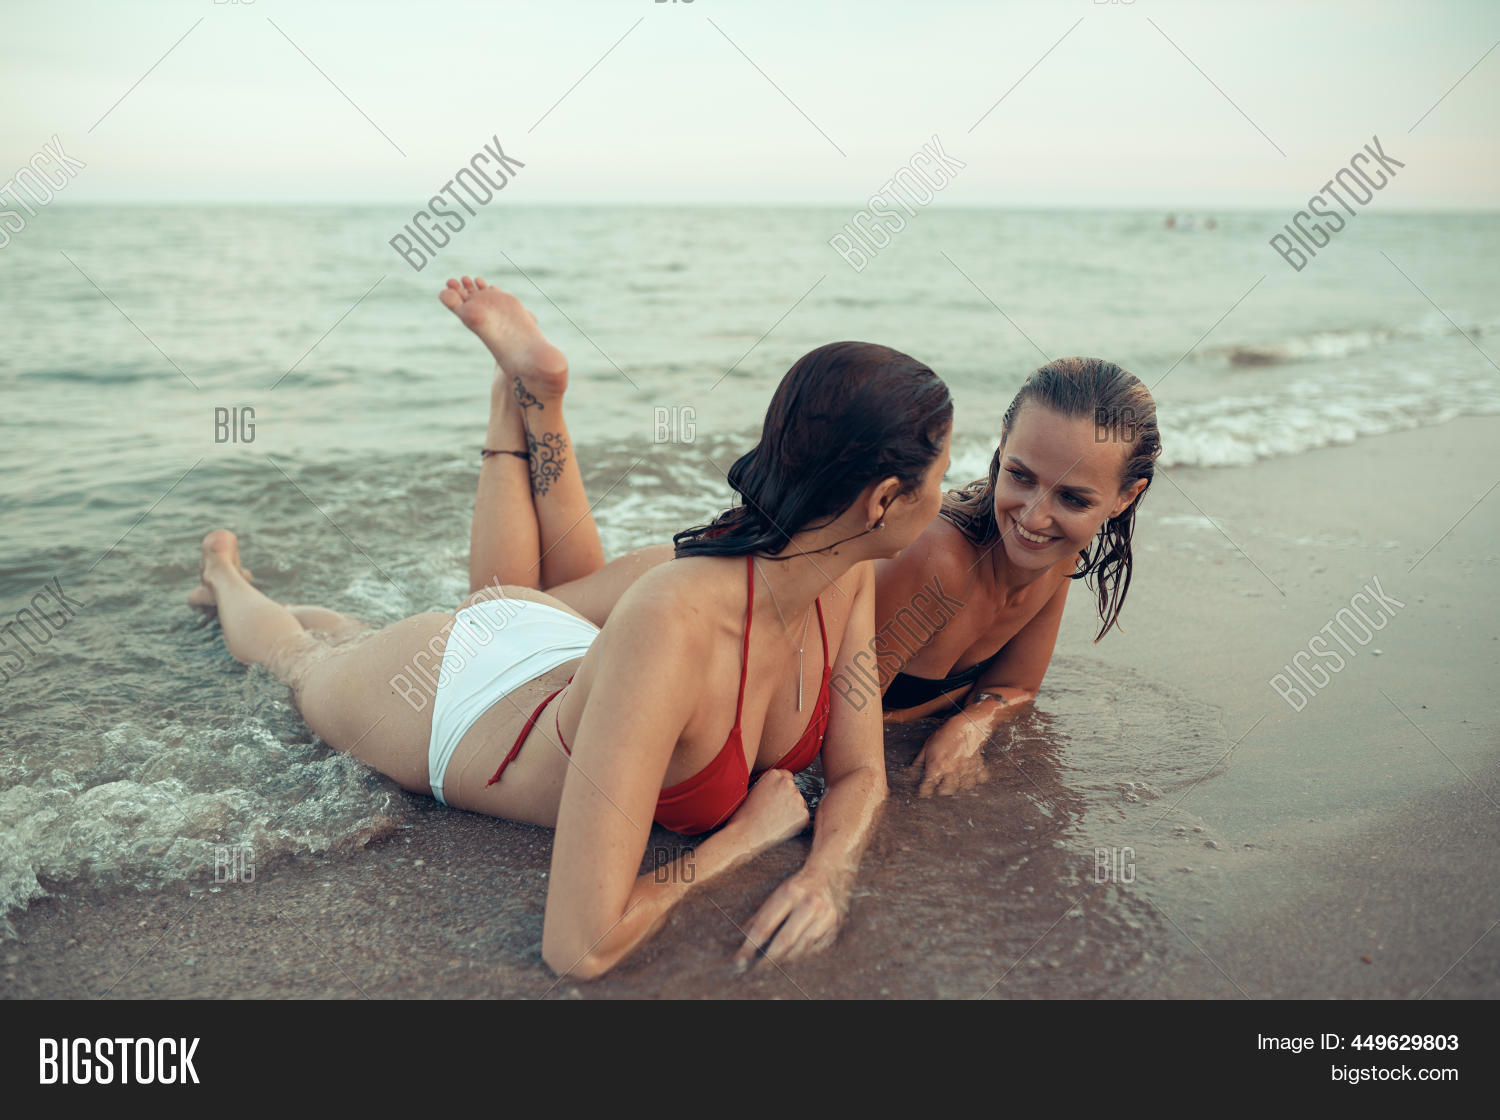 hot lesbians having fun